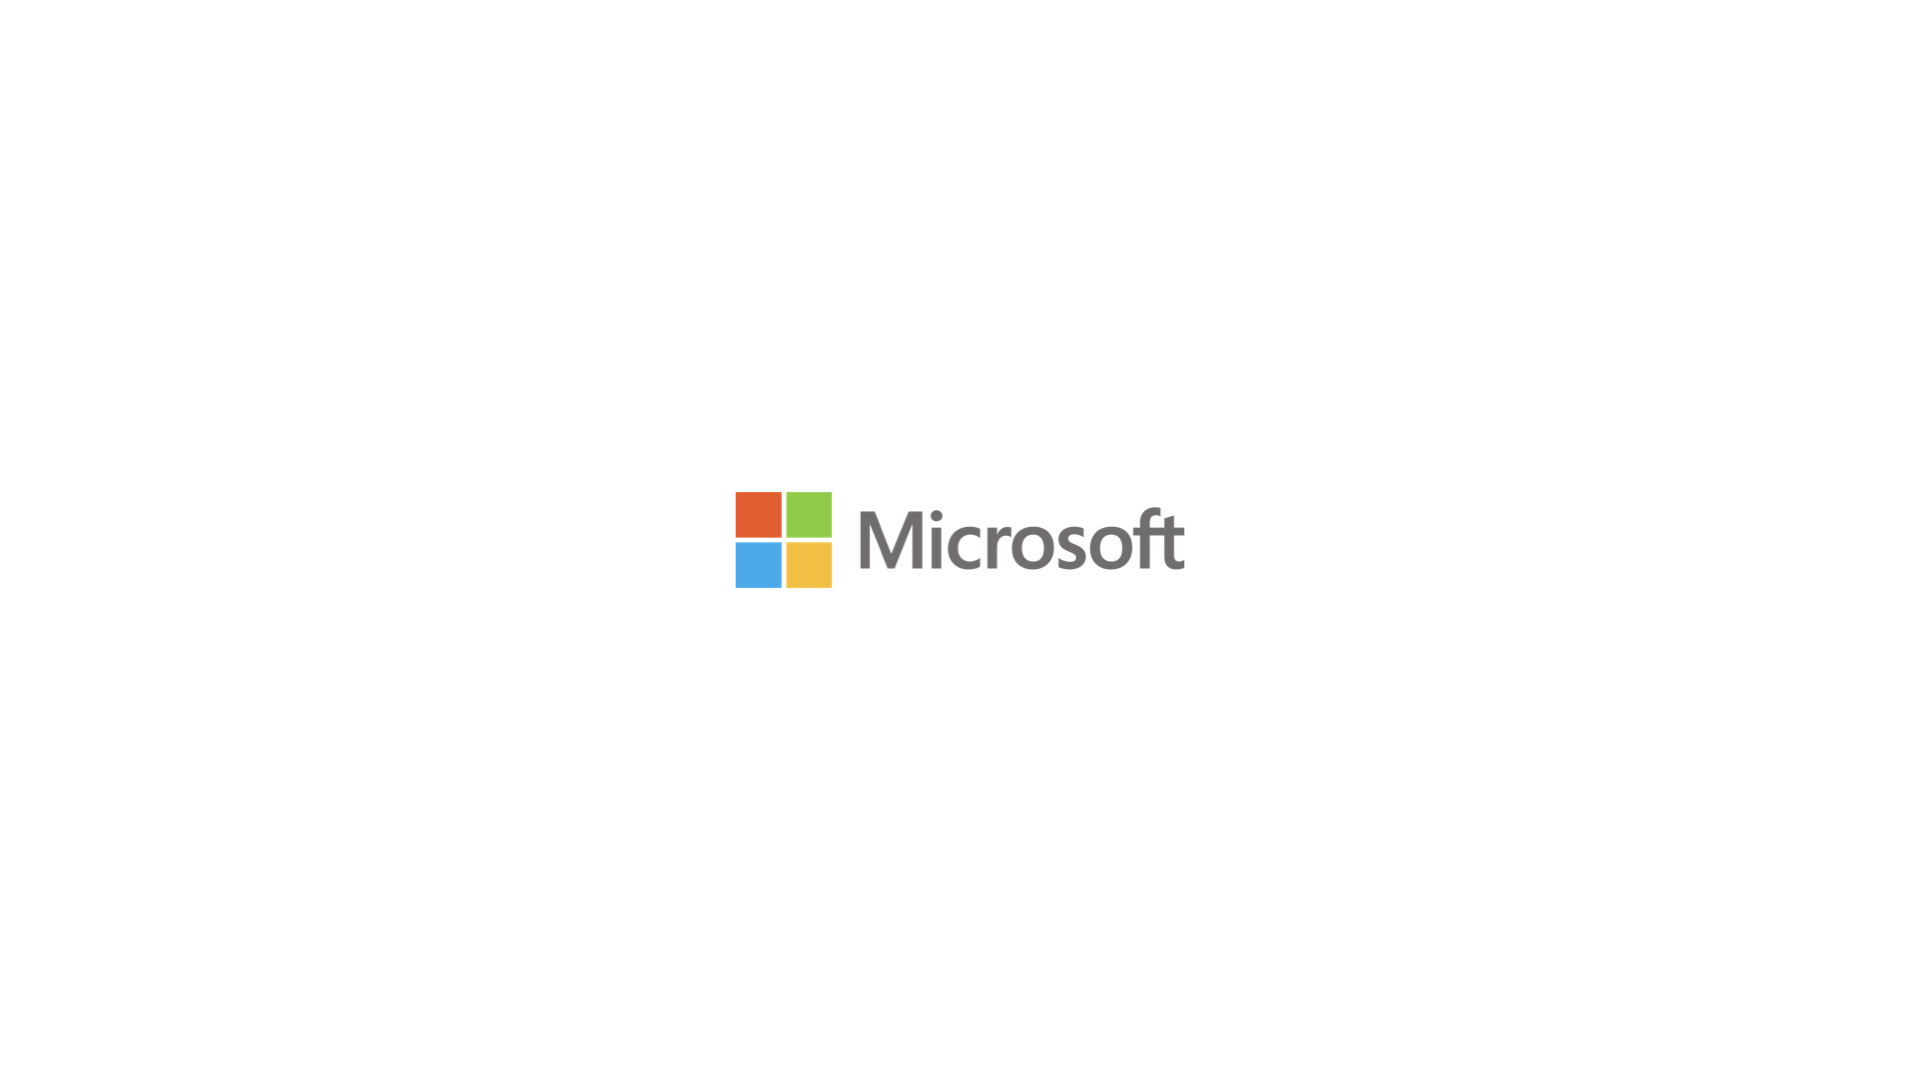 Microsoft Integrations